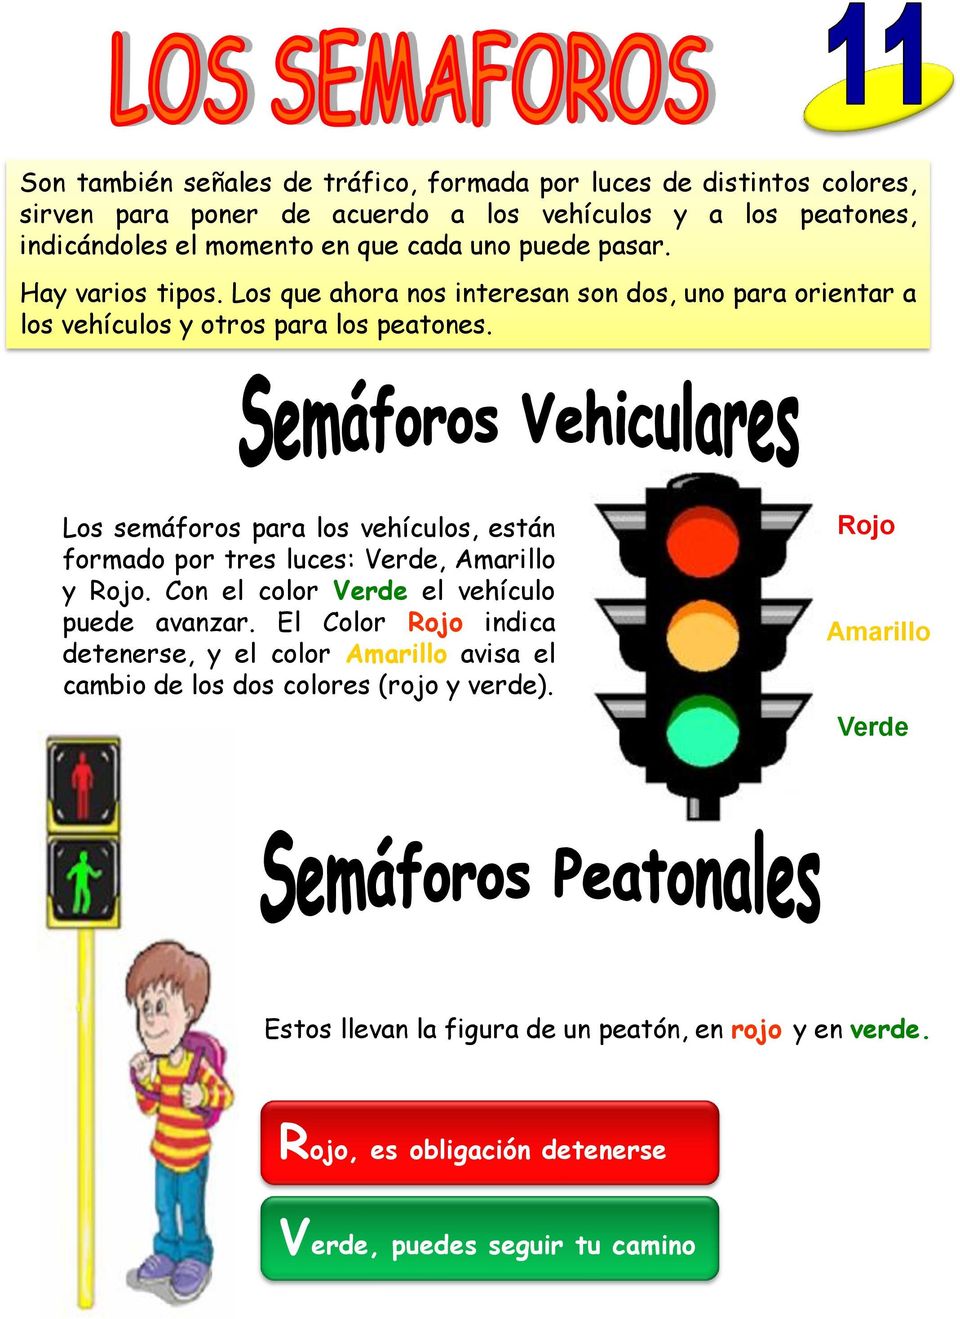 Los semáforos para los vehículos, están formado por tres luces: Verde, Amarillo y Rojo. Con el color Verde el vehículo puede avanzar.